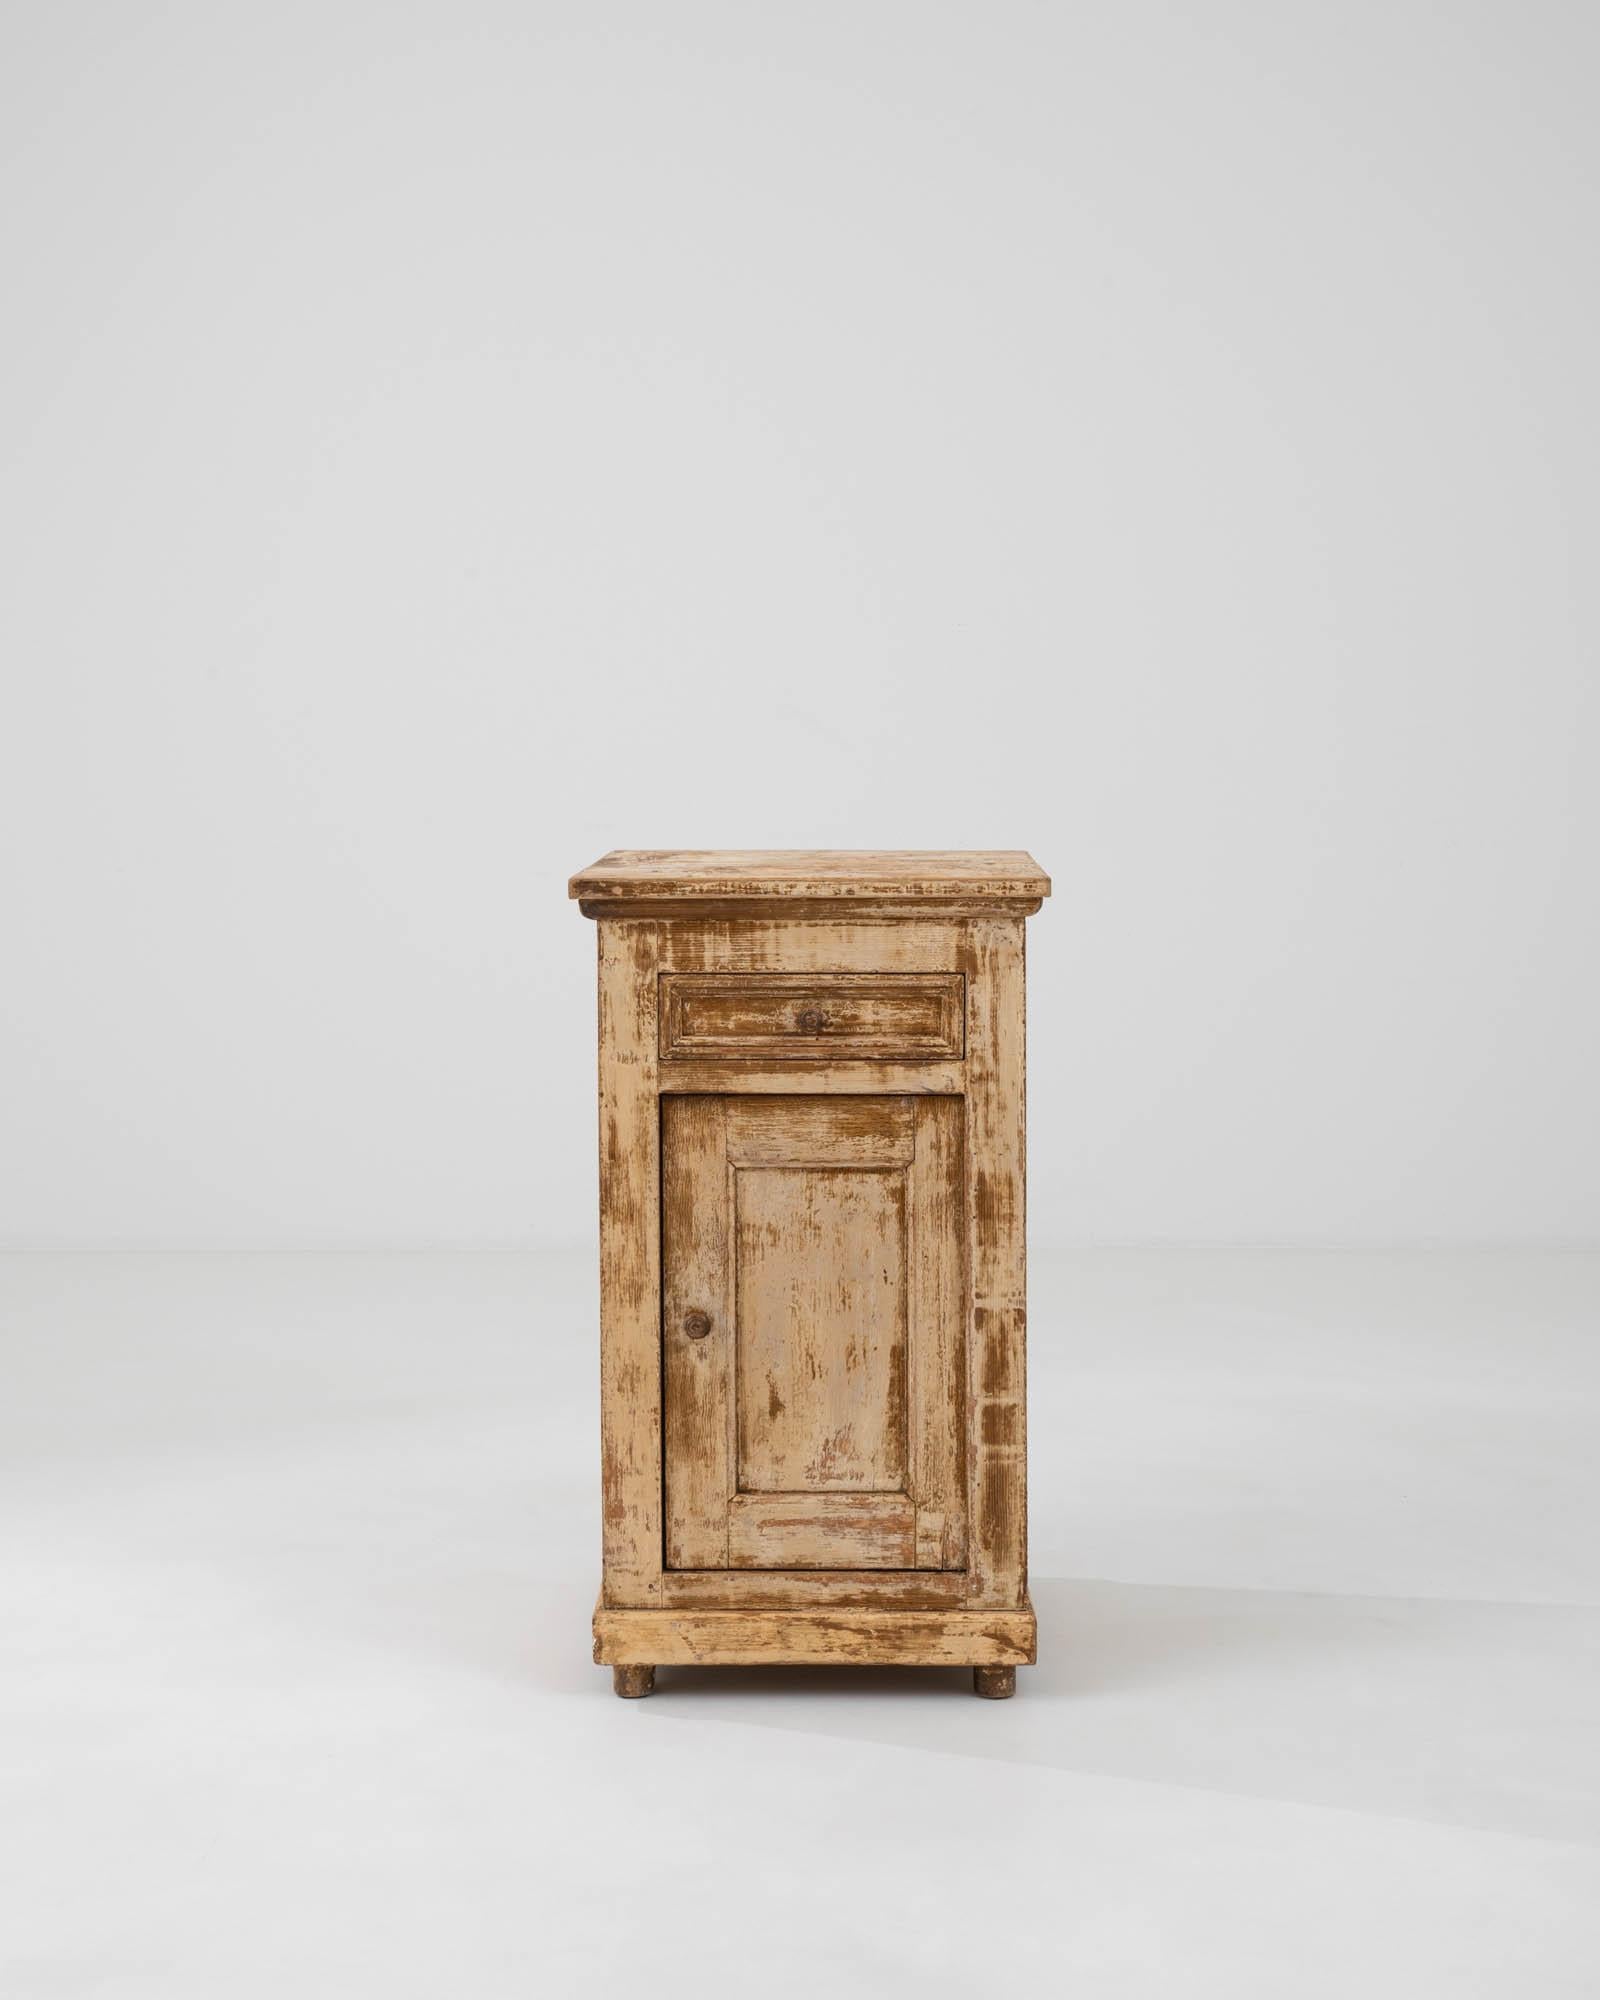 Remontez le temps avec cette authentique table de chevet en bois patiné français du XIXe siècle, une pièce qui capture véritablement l'essence du charme rustique. Chaque angle révèle la riche histoire de l'armoire, racontée à travers sa patine et